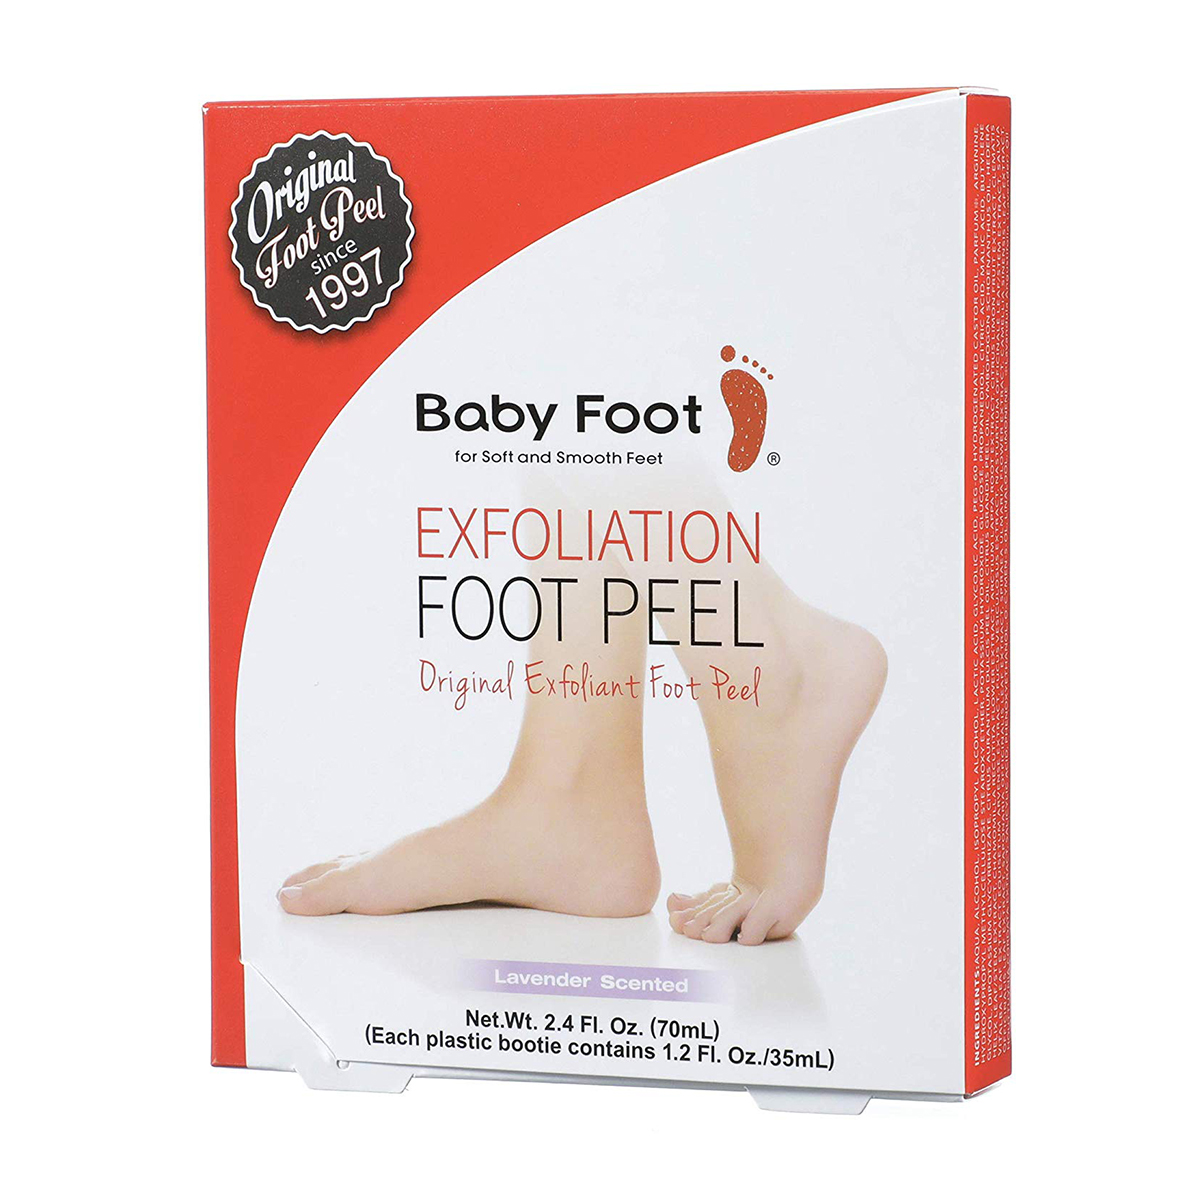 Baby Foot Original Foot Peel Exfoliator